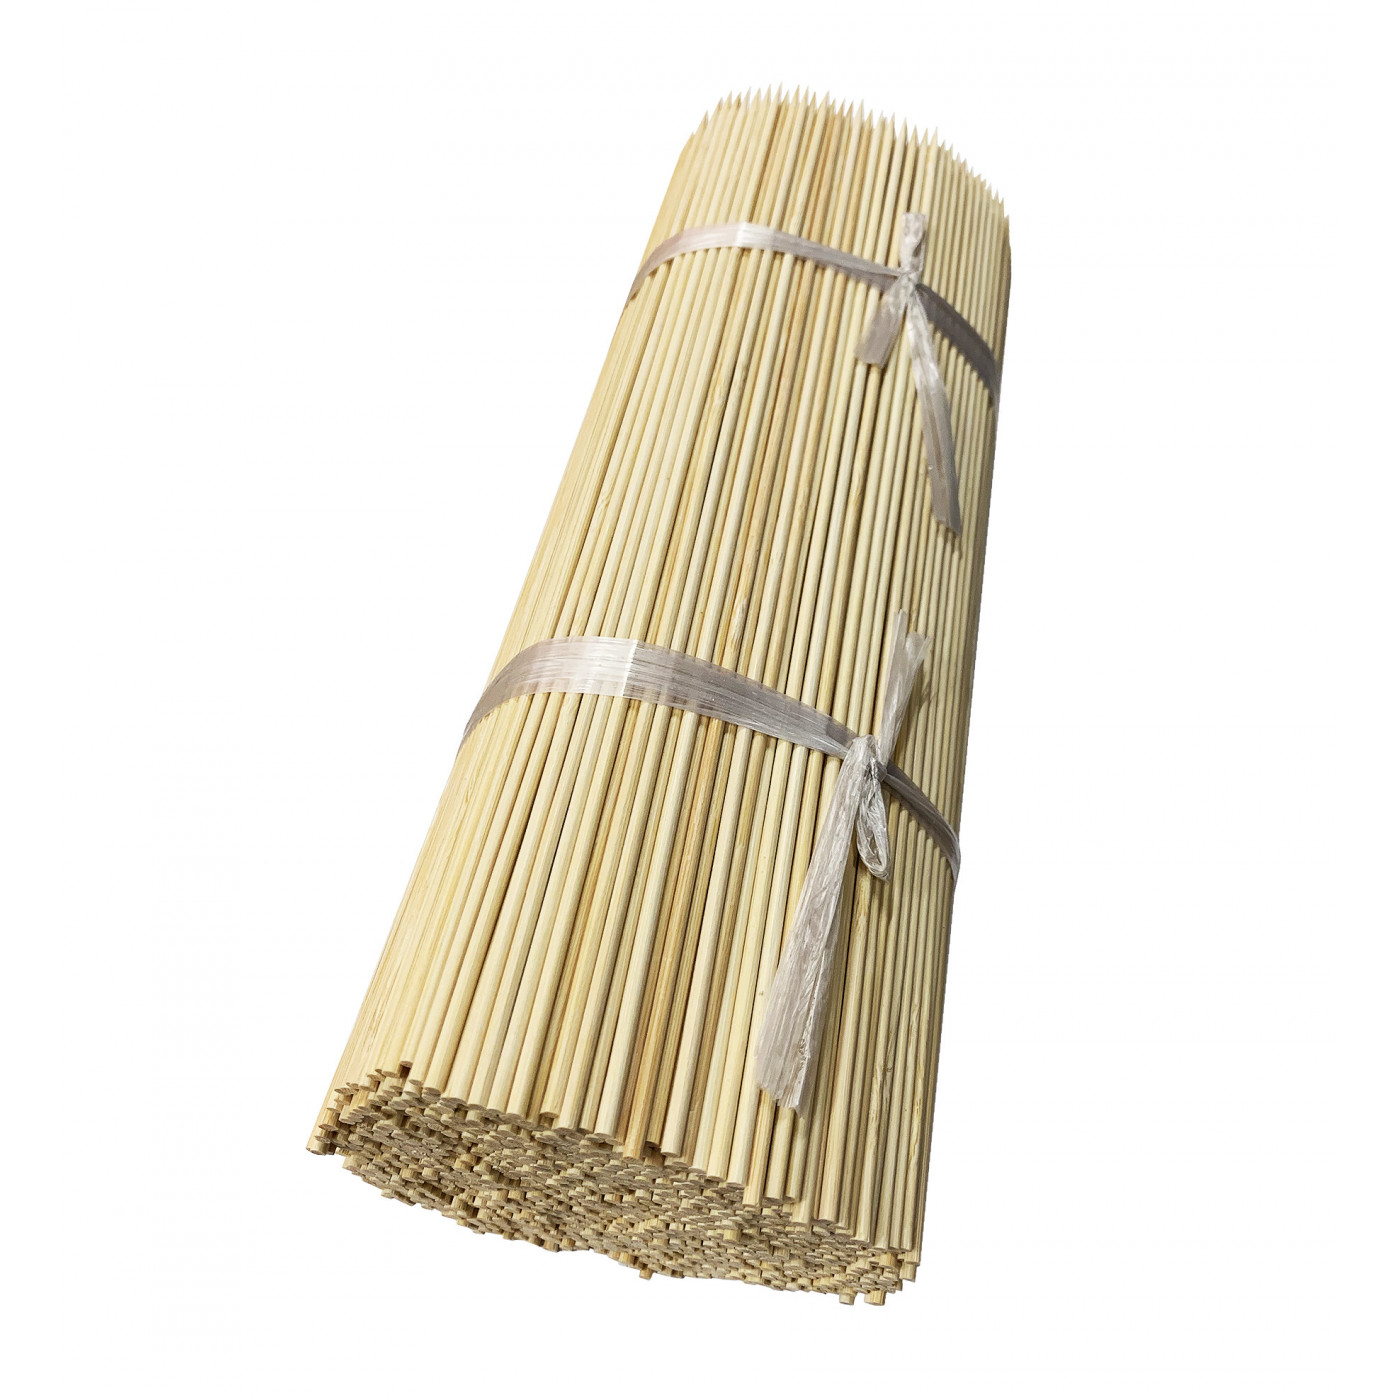 Zestaw 1000 patyczków bambusowych (3 mm x 30 cm)